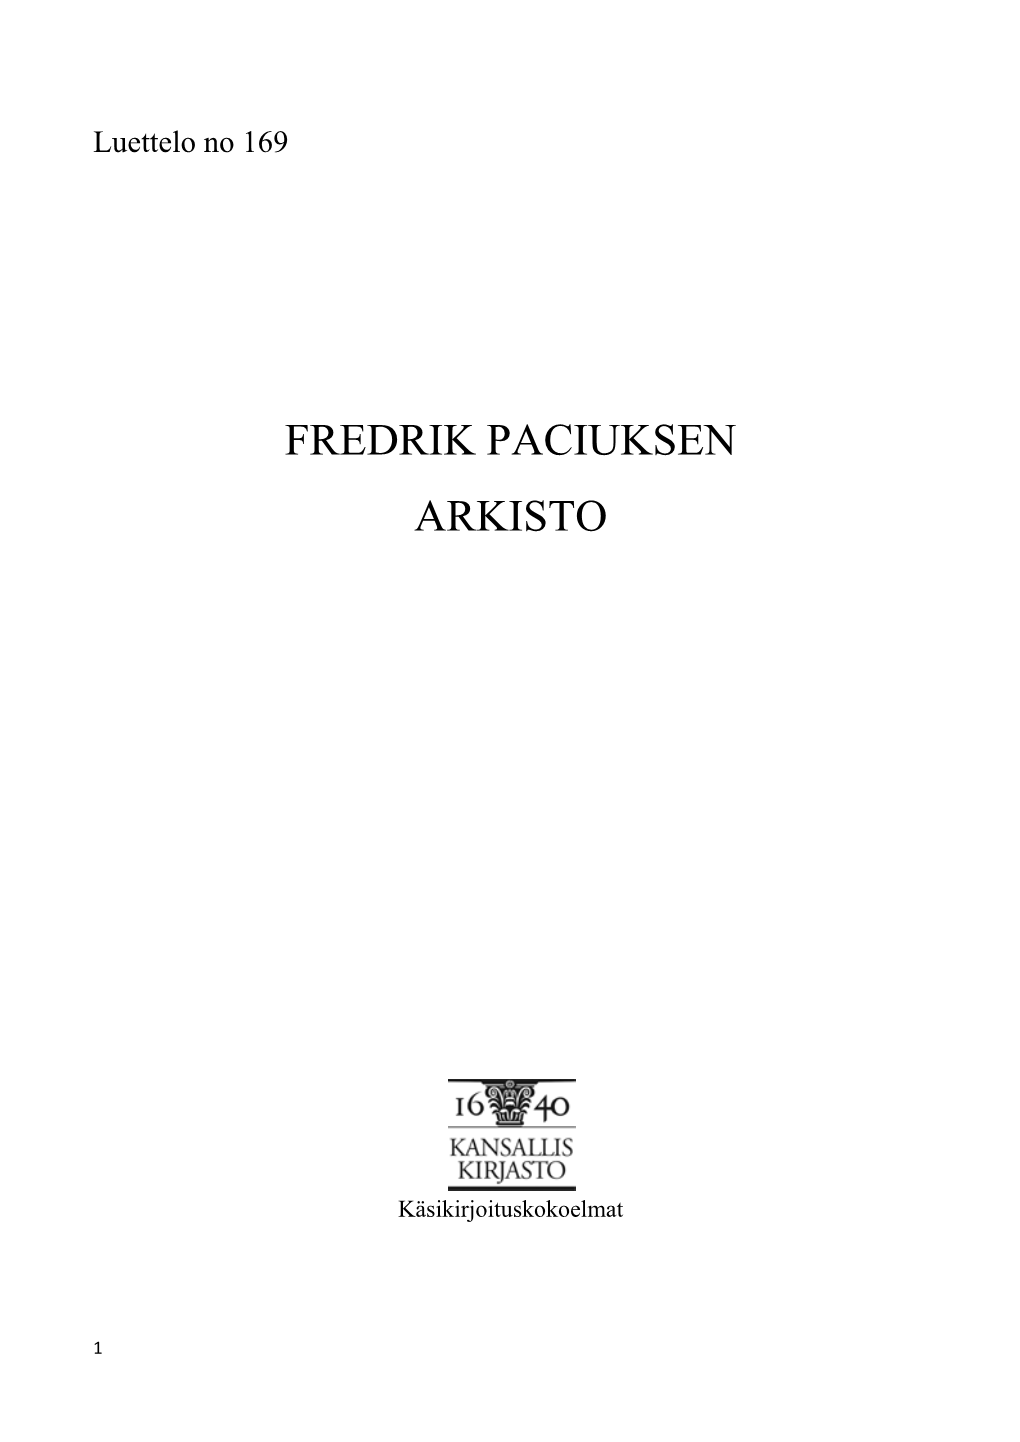 Fredrik Paciuksen Arkisto